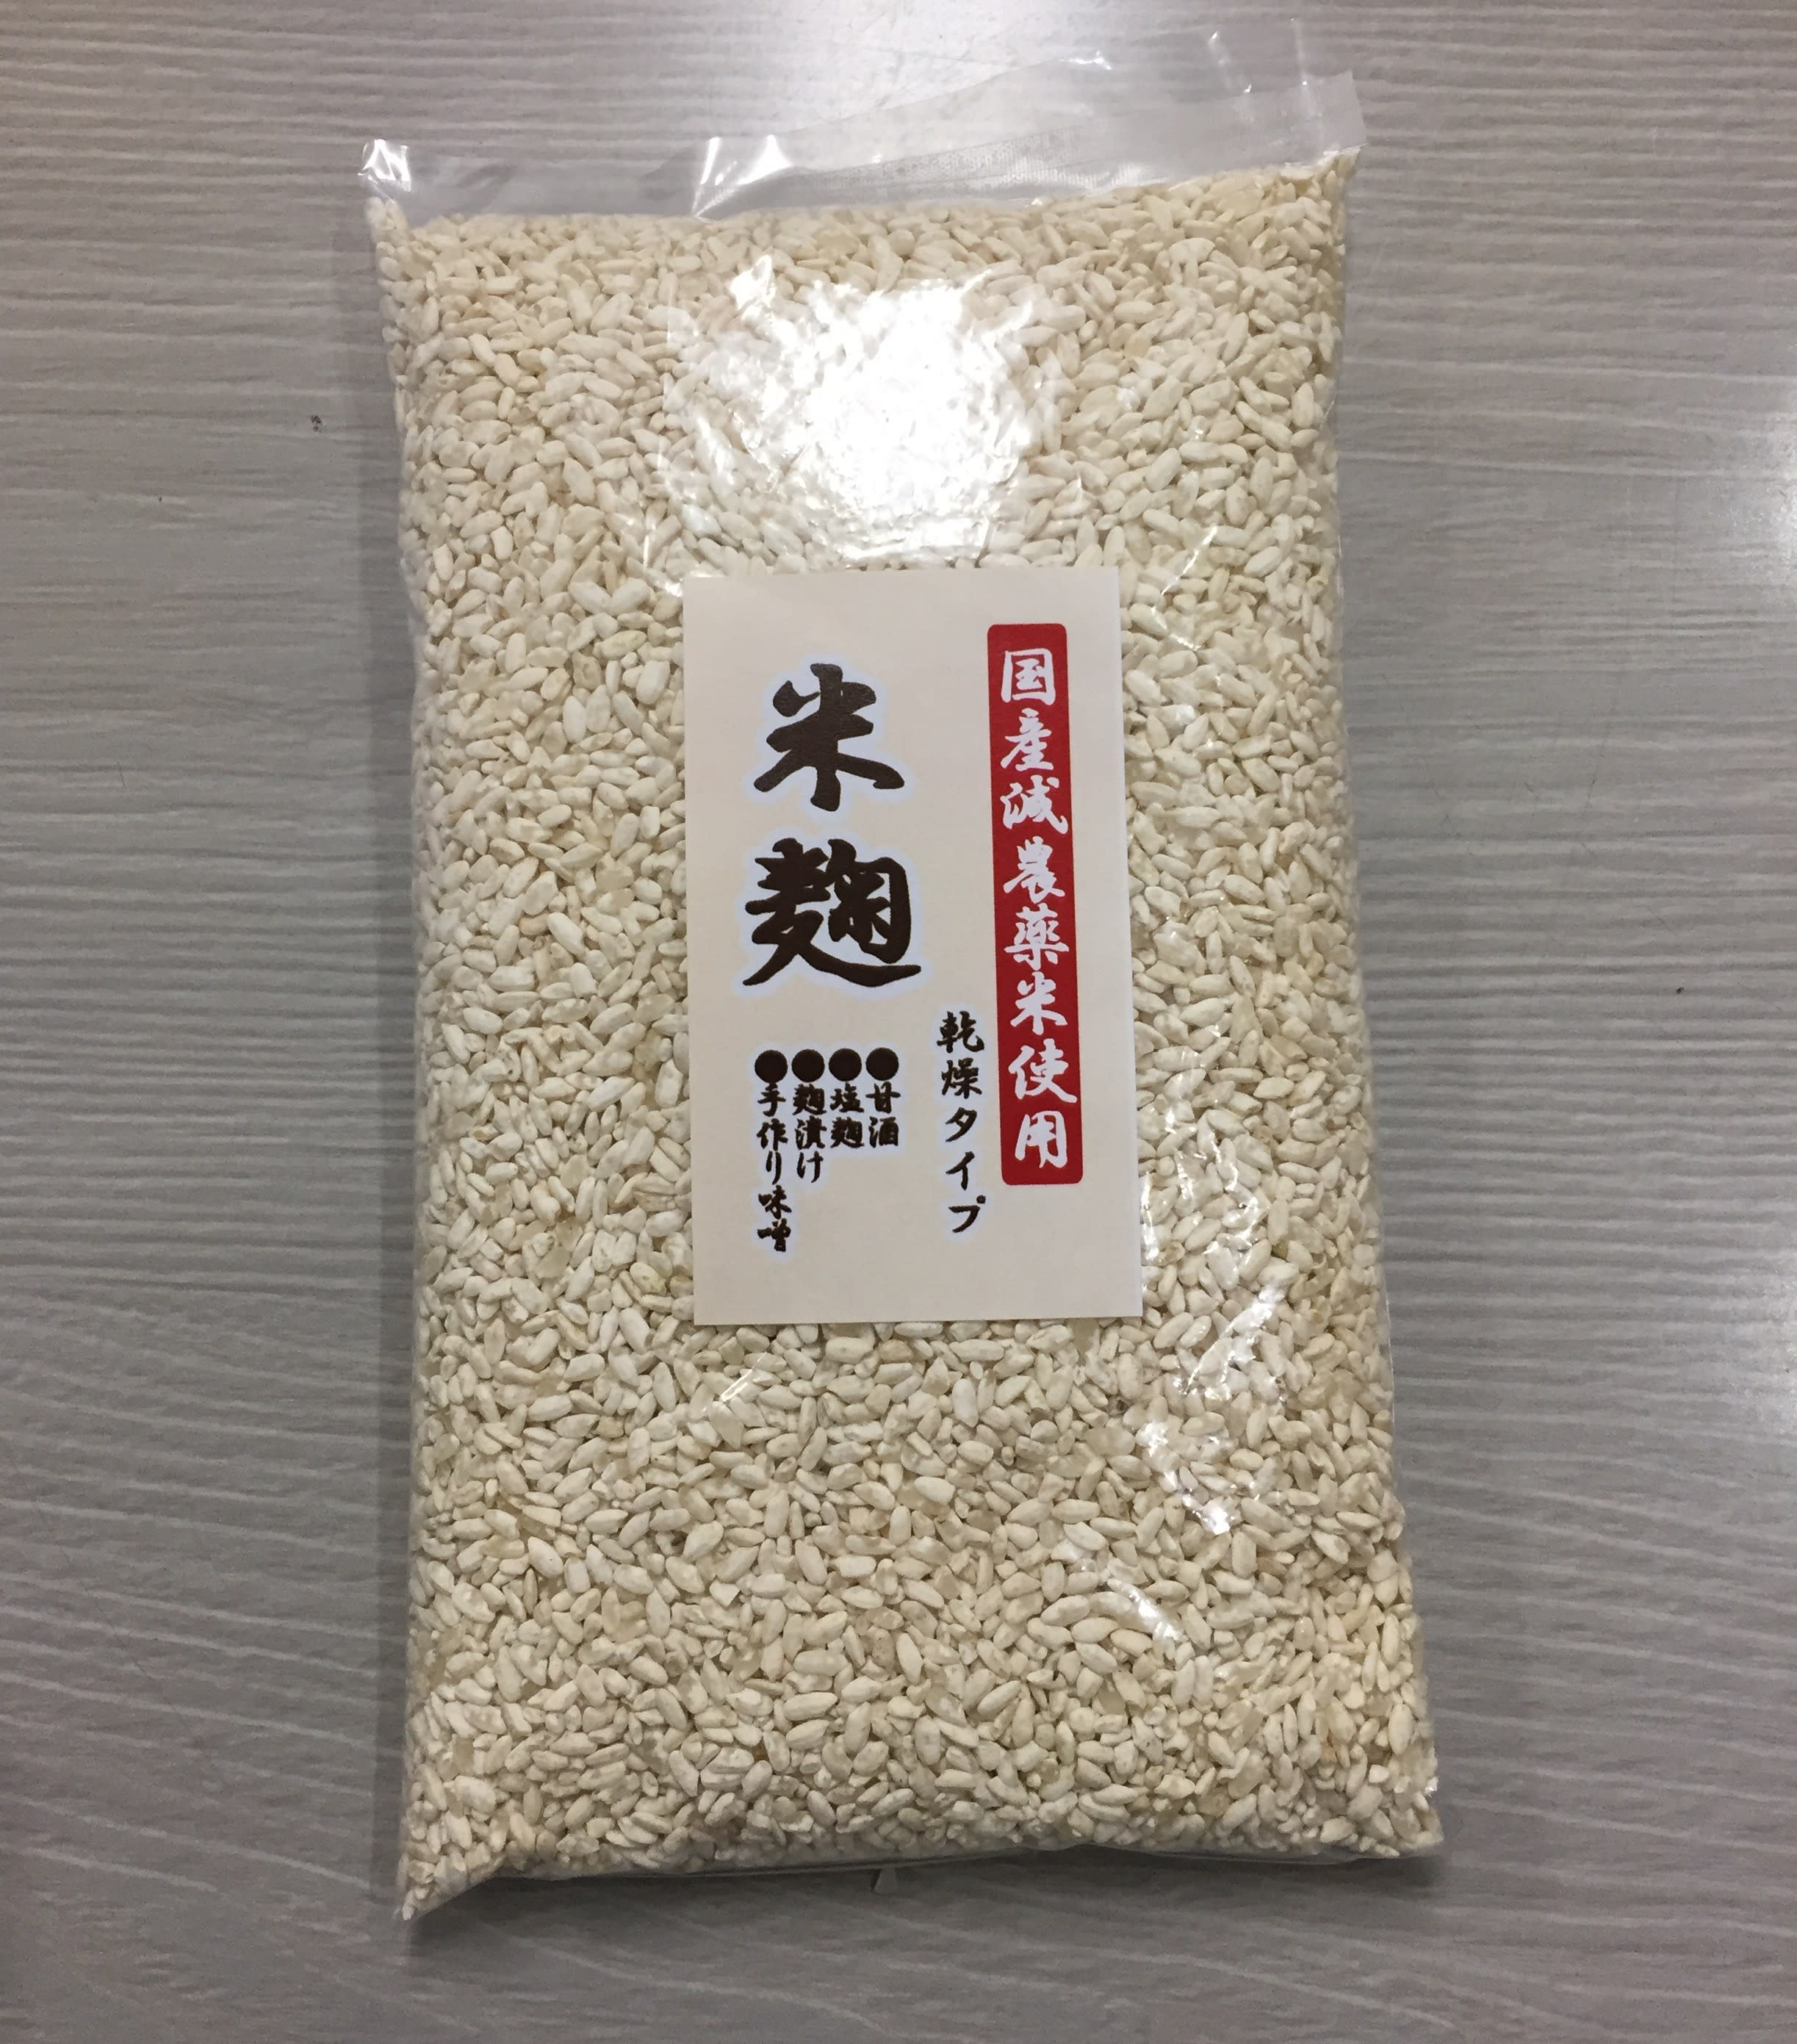 甘い甘酒が作れる 乾燥米麹 国産米使用 | 農家漁師から産地直送の通販 ポケットマルシェ